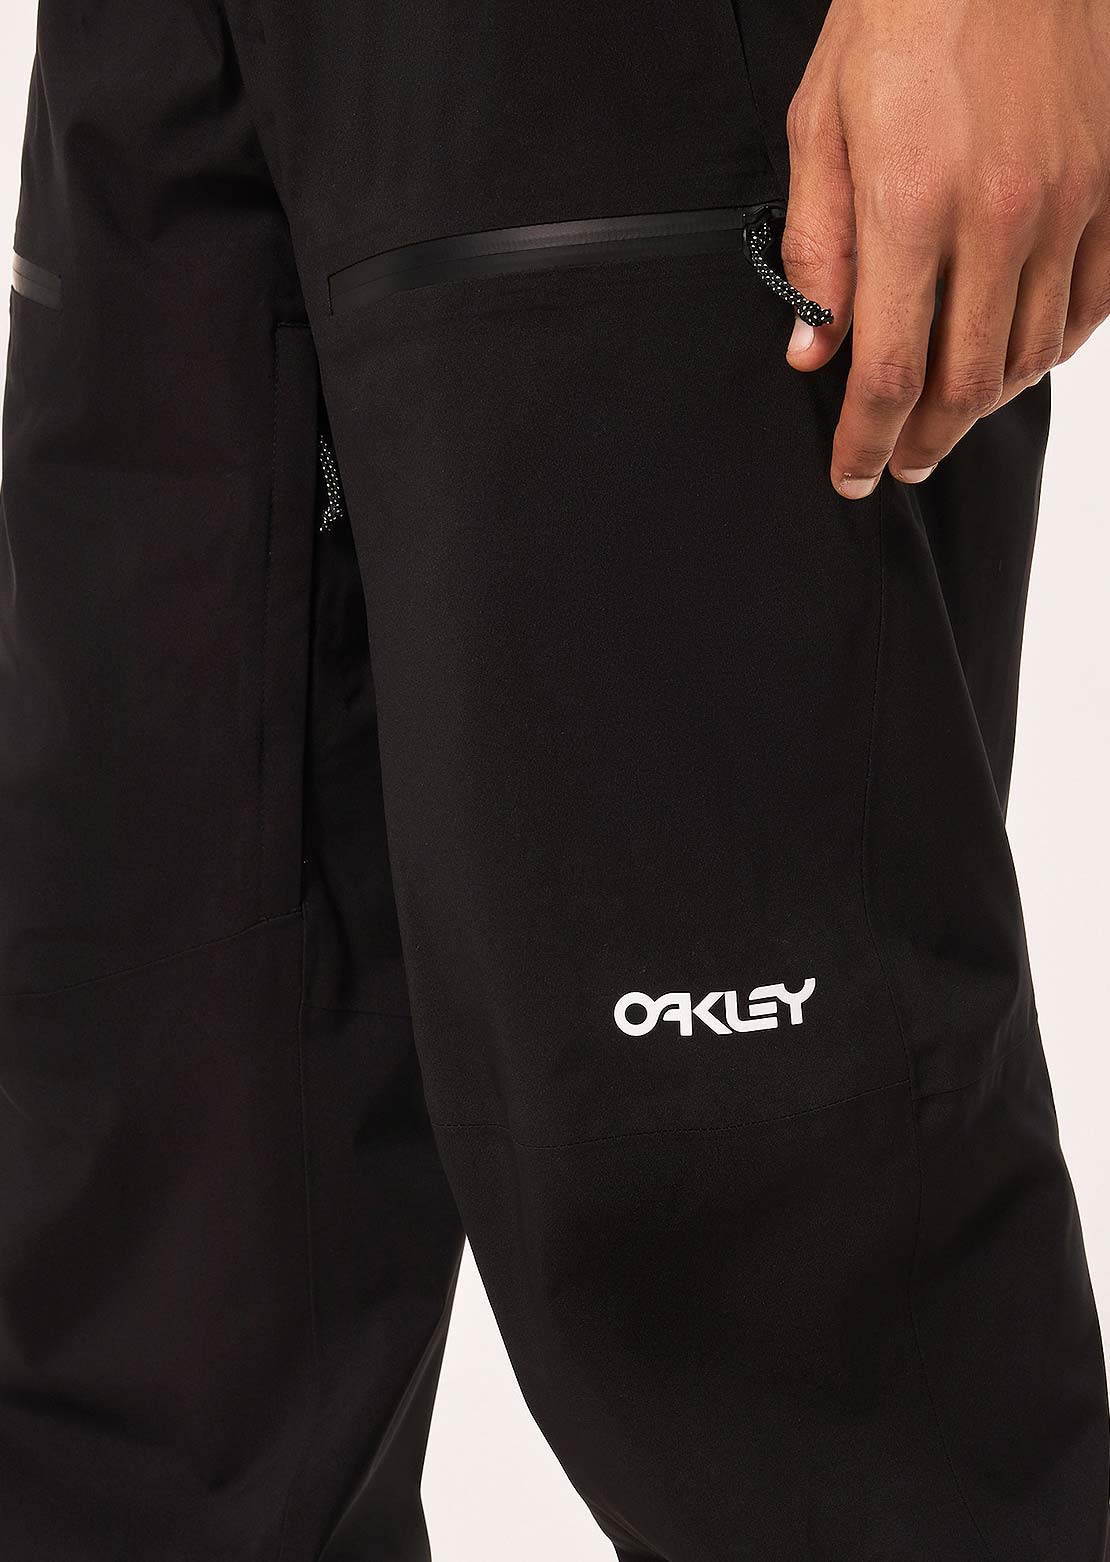 Oakley Men's TNP Lined Shell Pants 2.0 - PRFO Sports